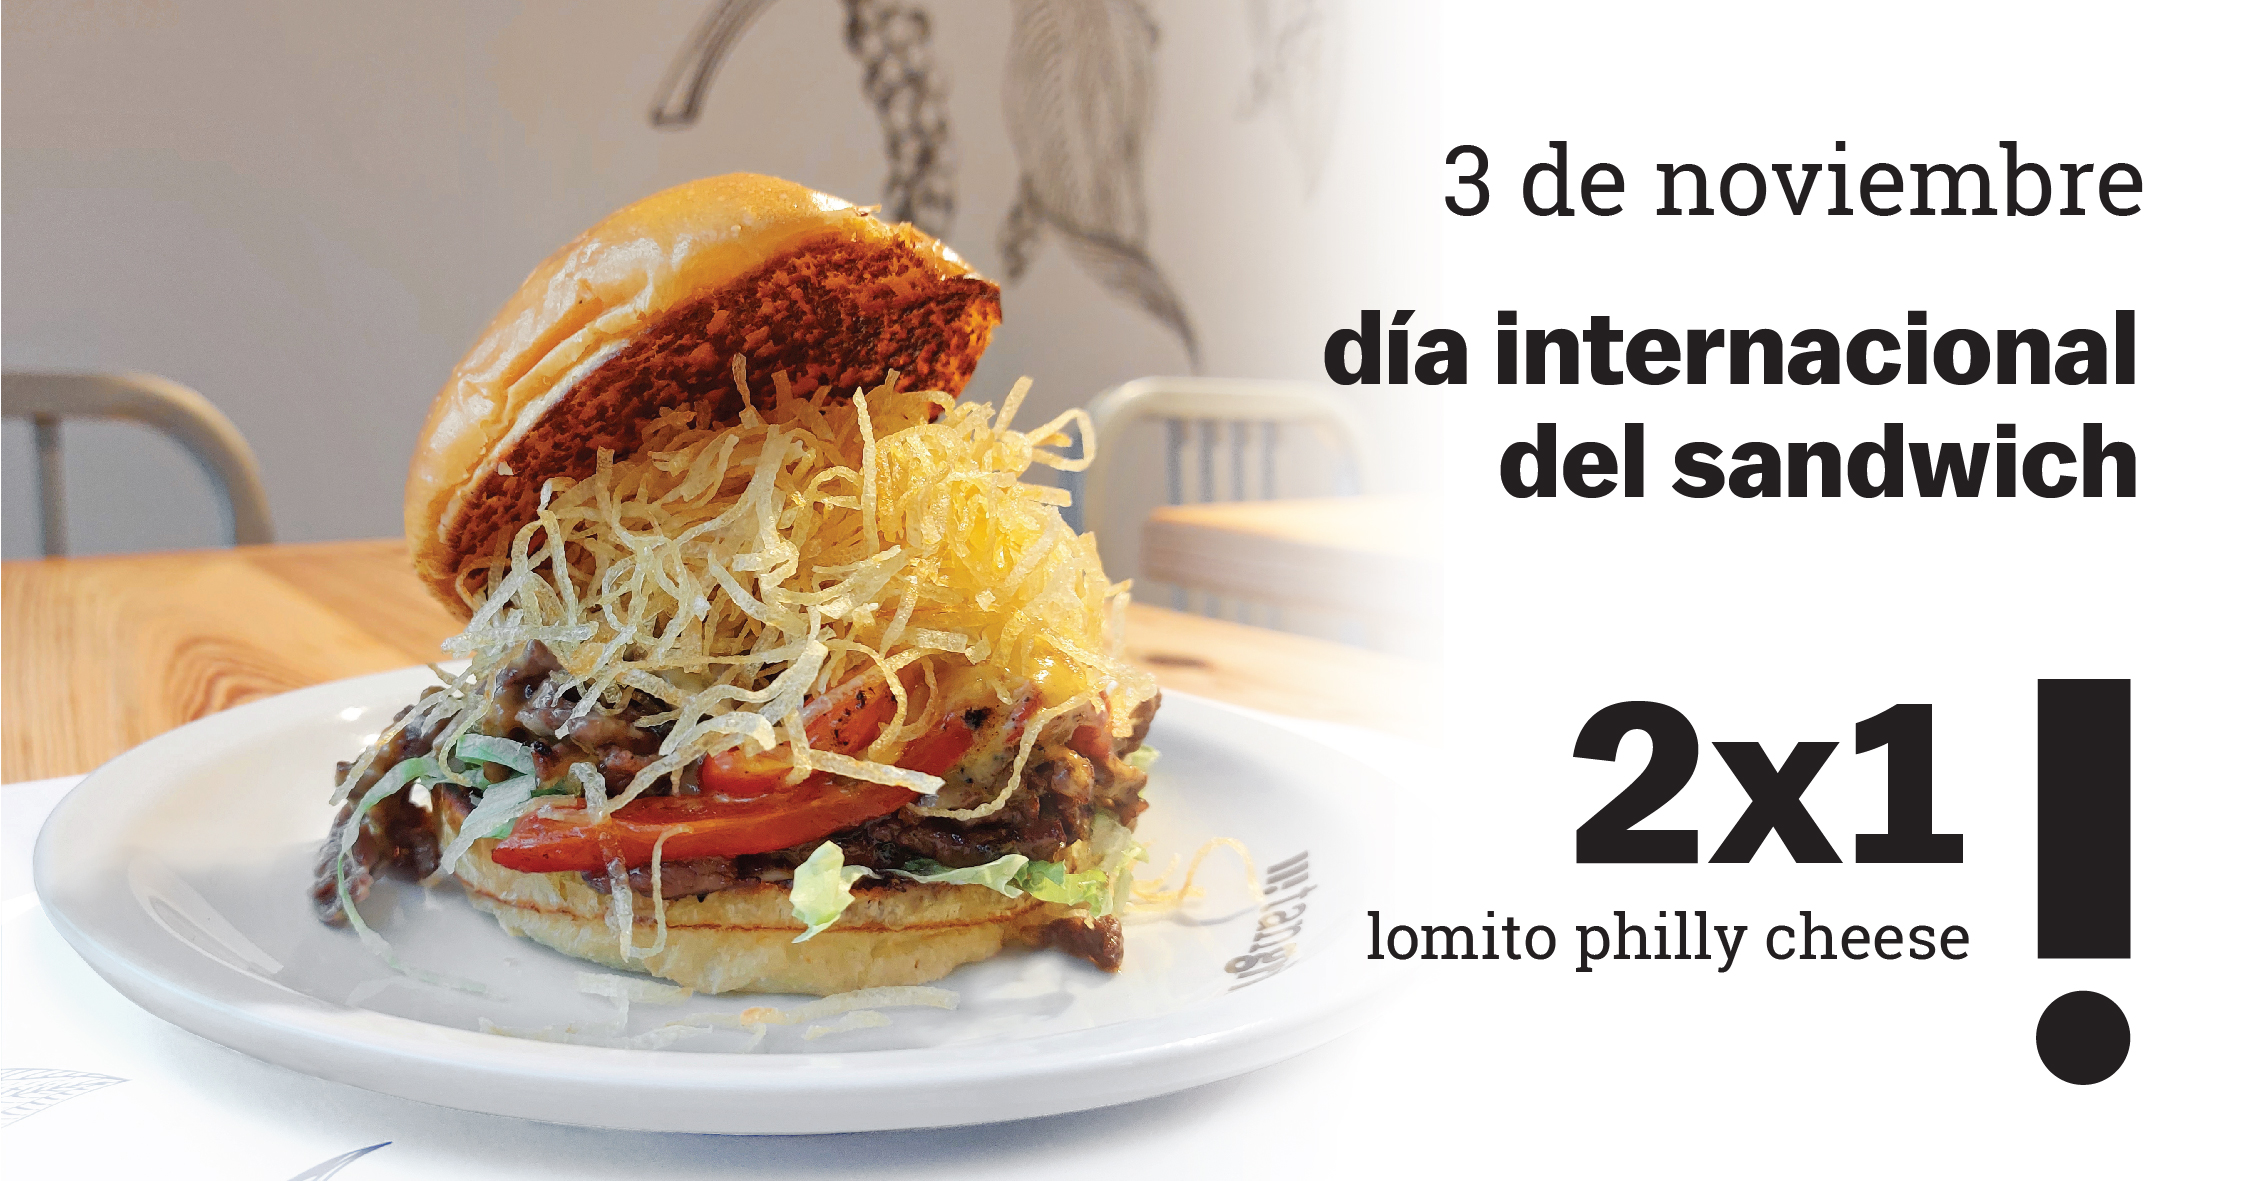  Lomito Philly Cheese 2x1 por el día del sandwich en Tangrill